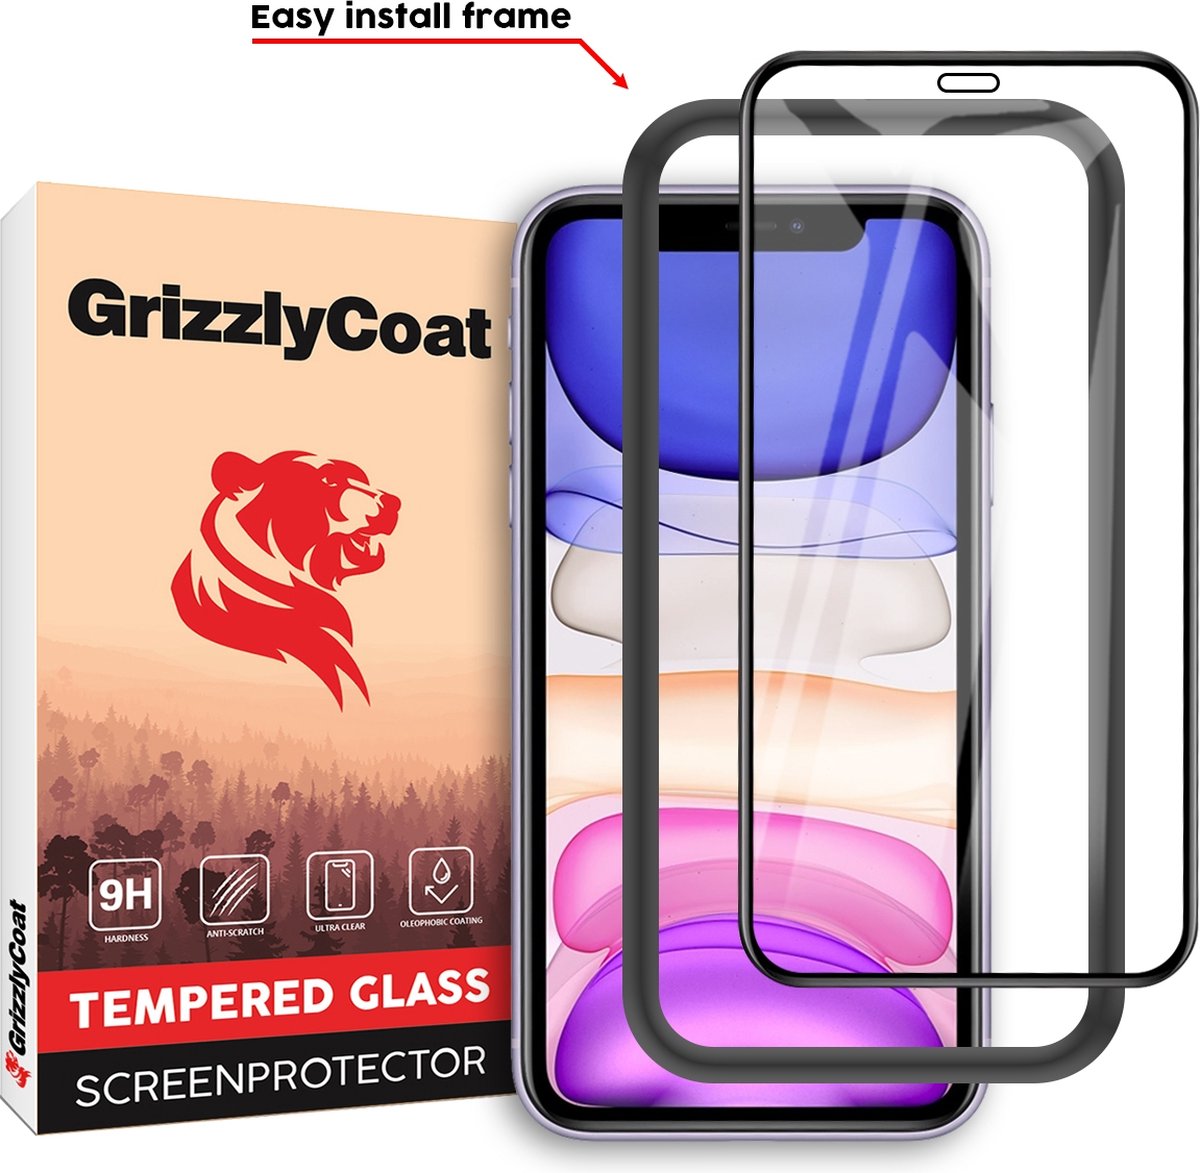 GrizzlyCoat Easy Fit Screenprotector geschikt voor Apple iPhone XR Glazen Screenprotector - Case Friendly + Installatie Frame - Zwart